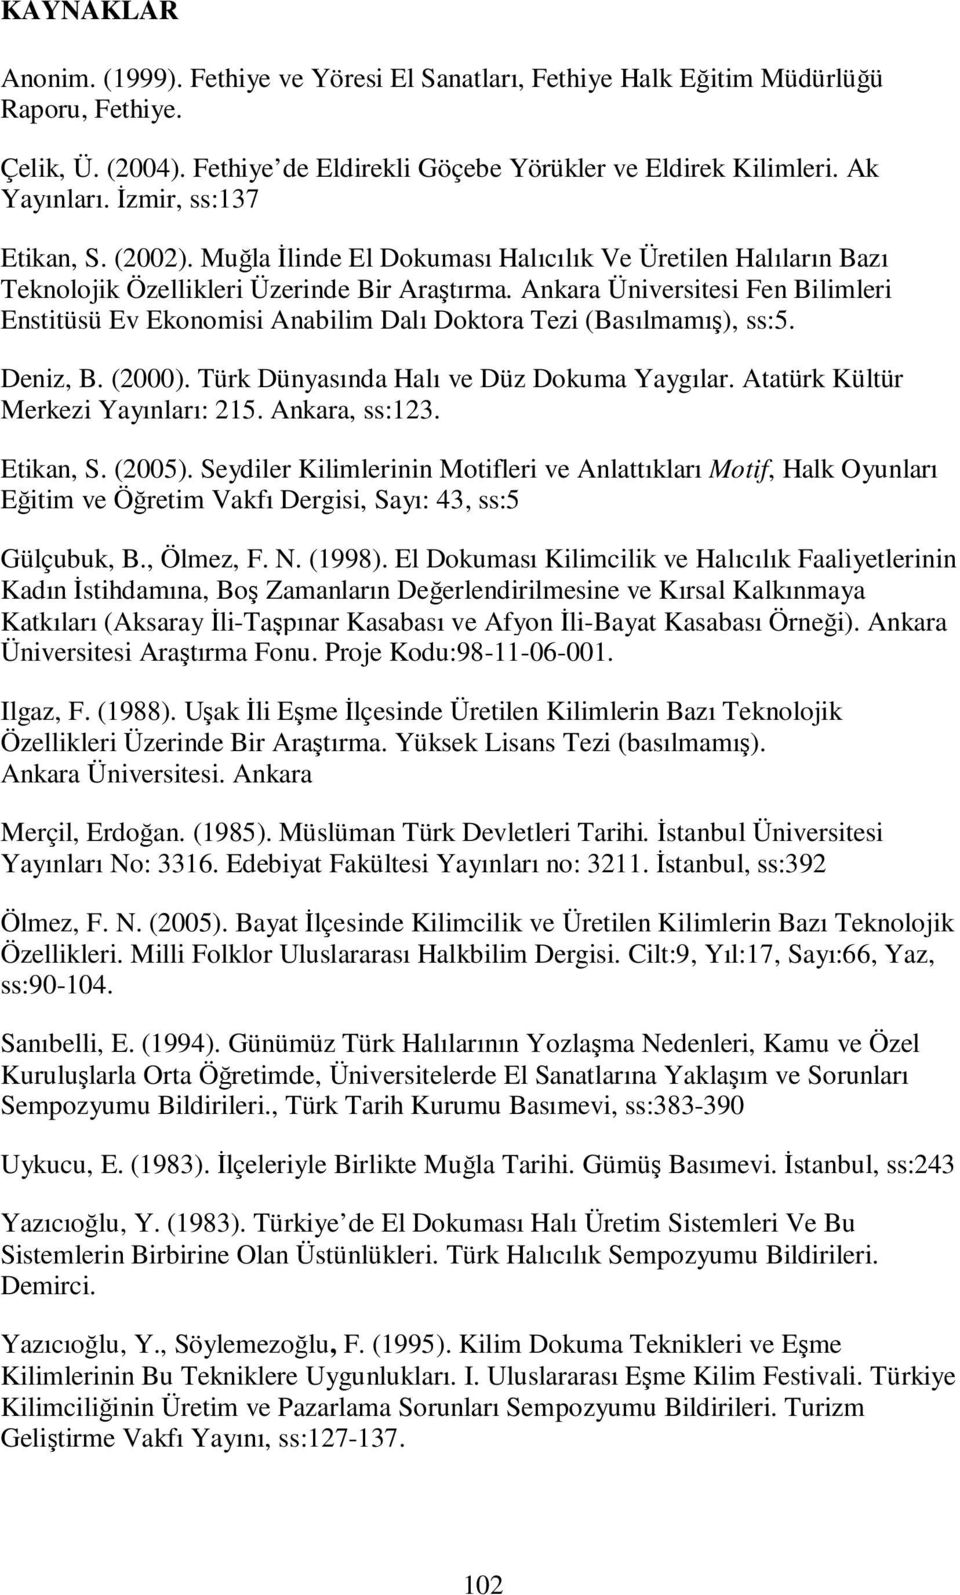 Ankara Üniversitesi Fen Bilimleri Enstitüsü Ev Ekonomisi Anabilim Dalı Doktora Tezi (Basılmamış), ss:5. Deniz, B. (2000). Türk Dünyasında Halı ve Düz Dokuma Yaygılar.